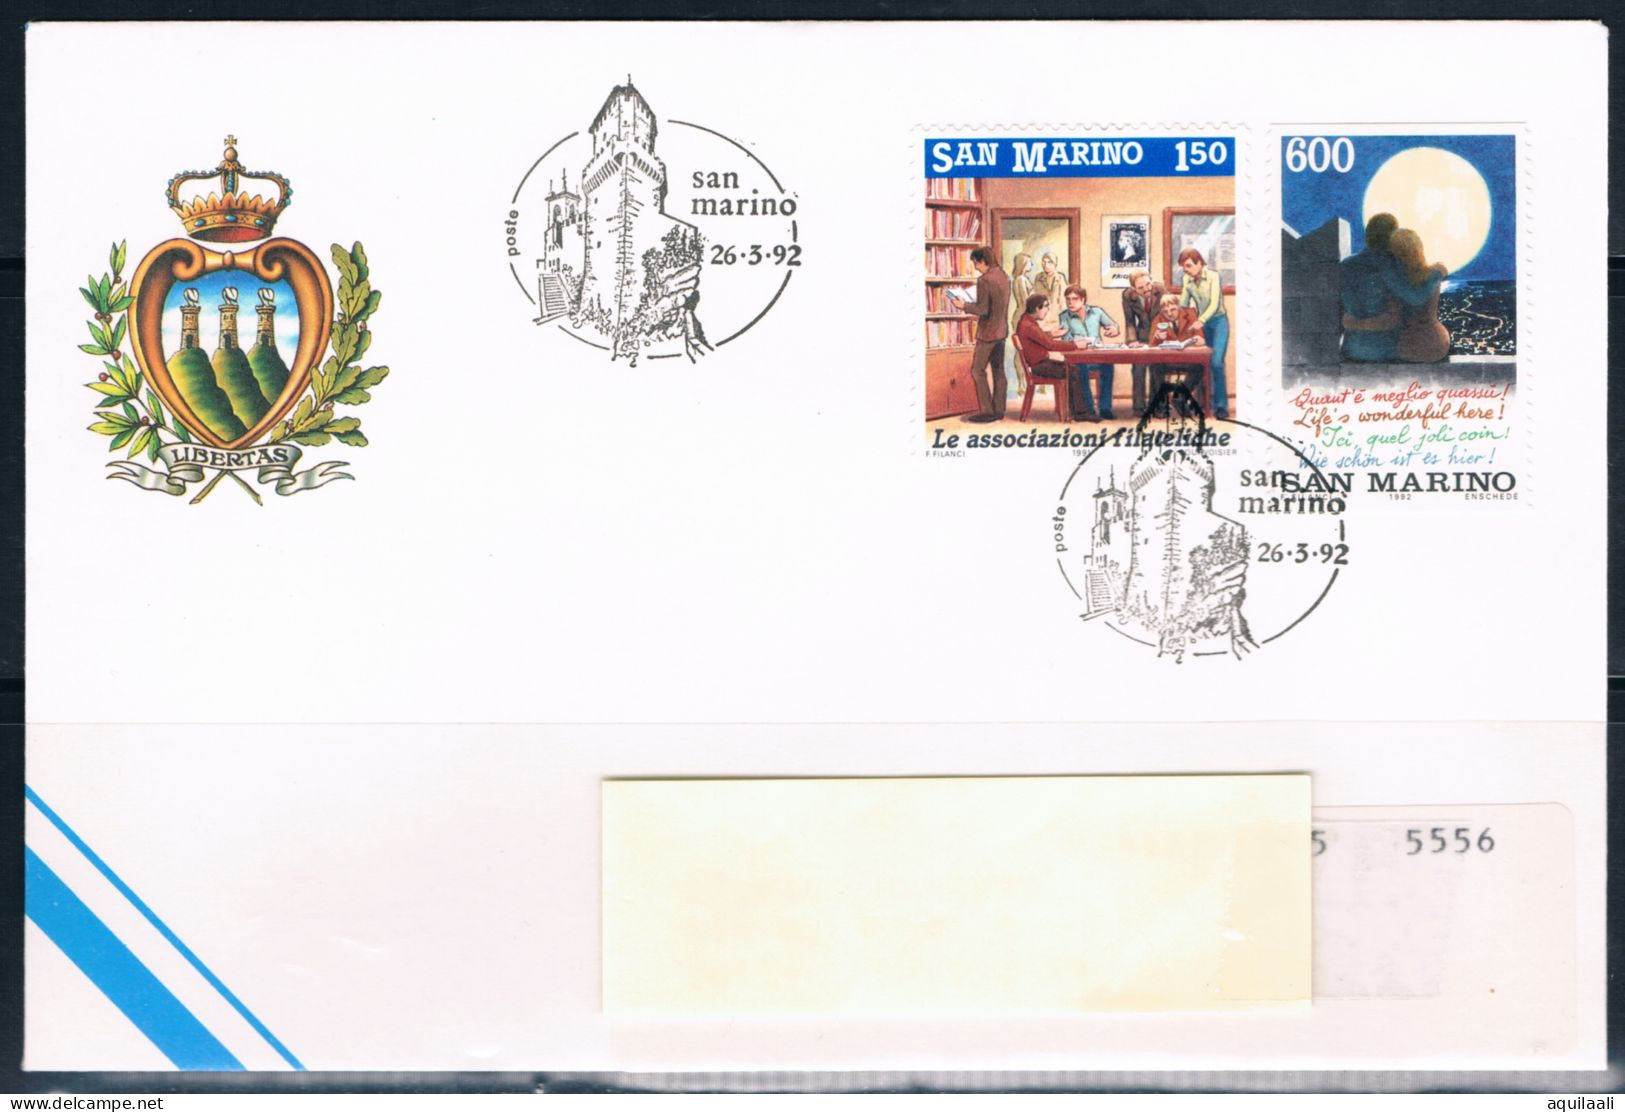 SAN MARINO 1992 -Fdc Attrattive Turistiche  " La Tranquillità" Annullo Speciale. - Used Stamps